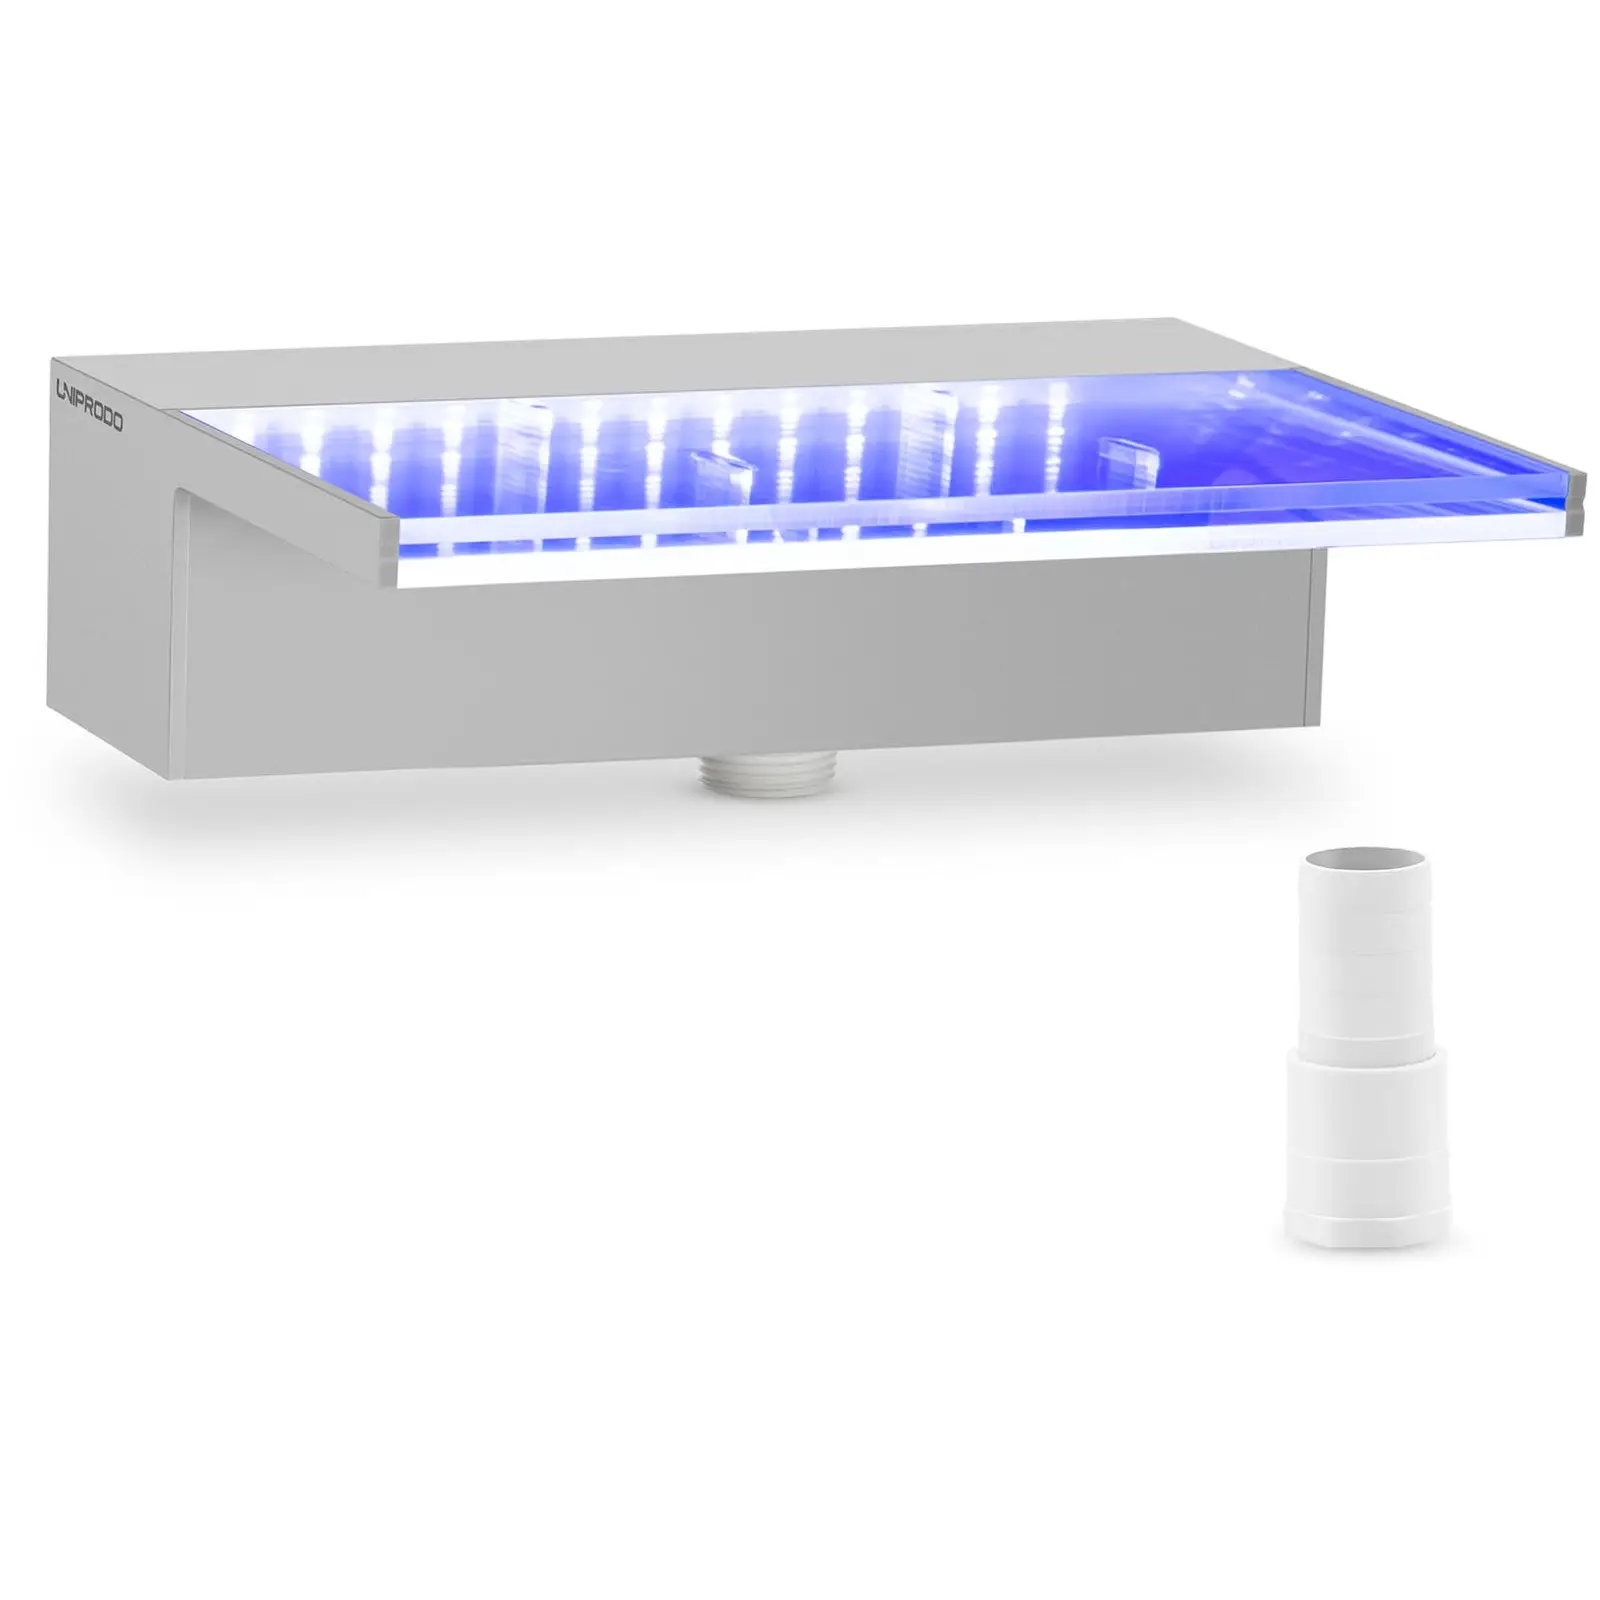 {{marketing_meta_keyword_1}} - 30 cm - LED osvetlenie - modrá / biela - hlboký chrlič